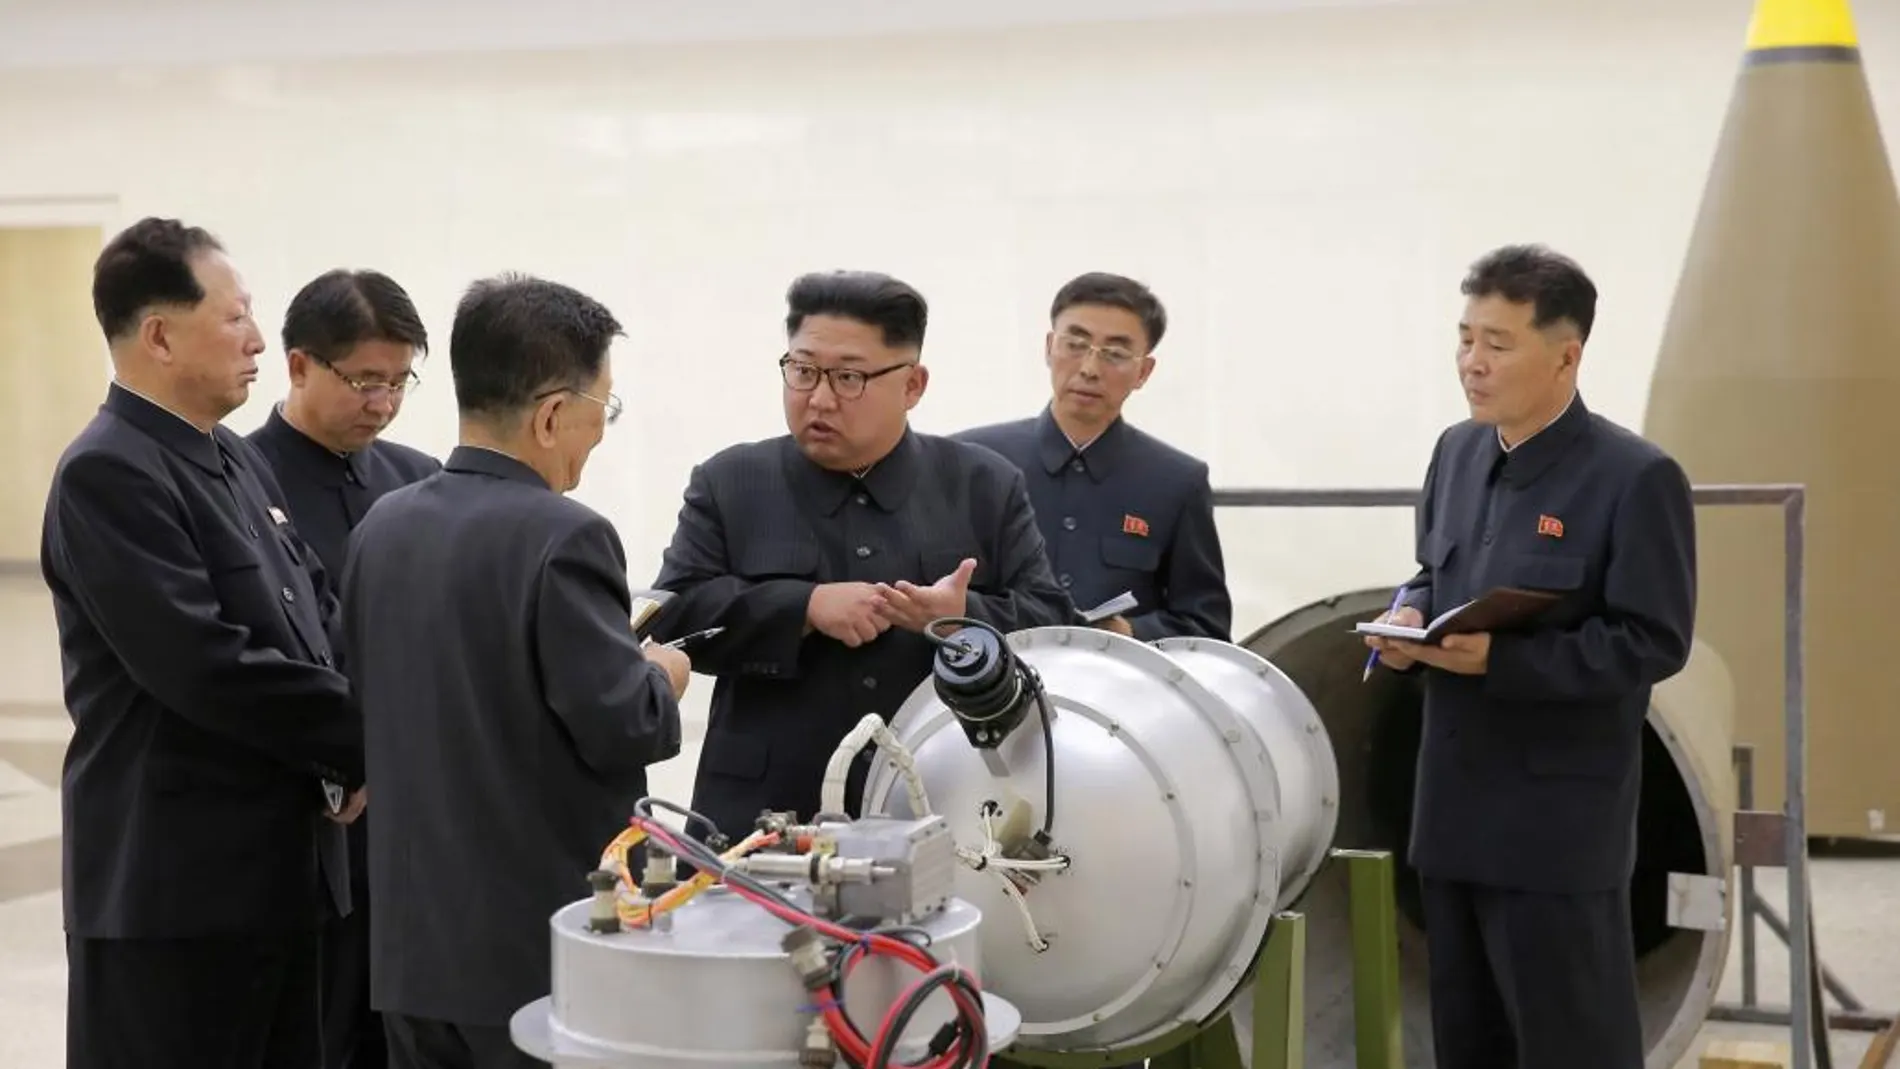 El líder de Corea del Norte asesorando sobre armamentística nuclear